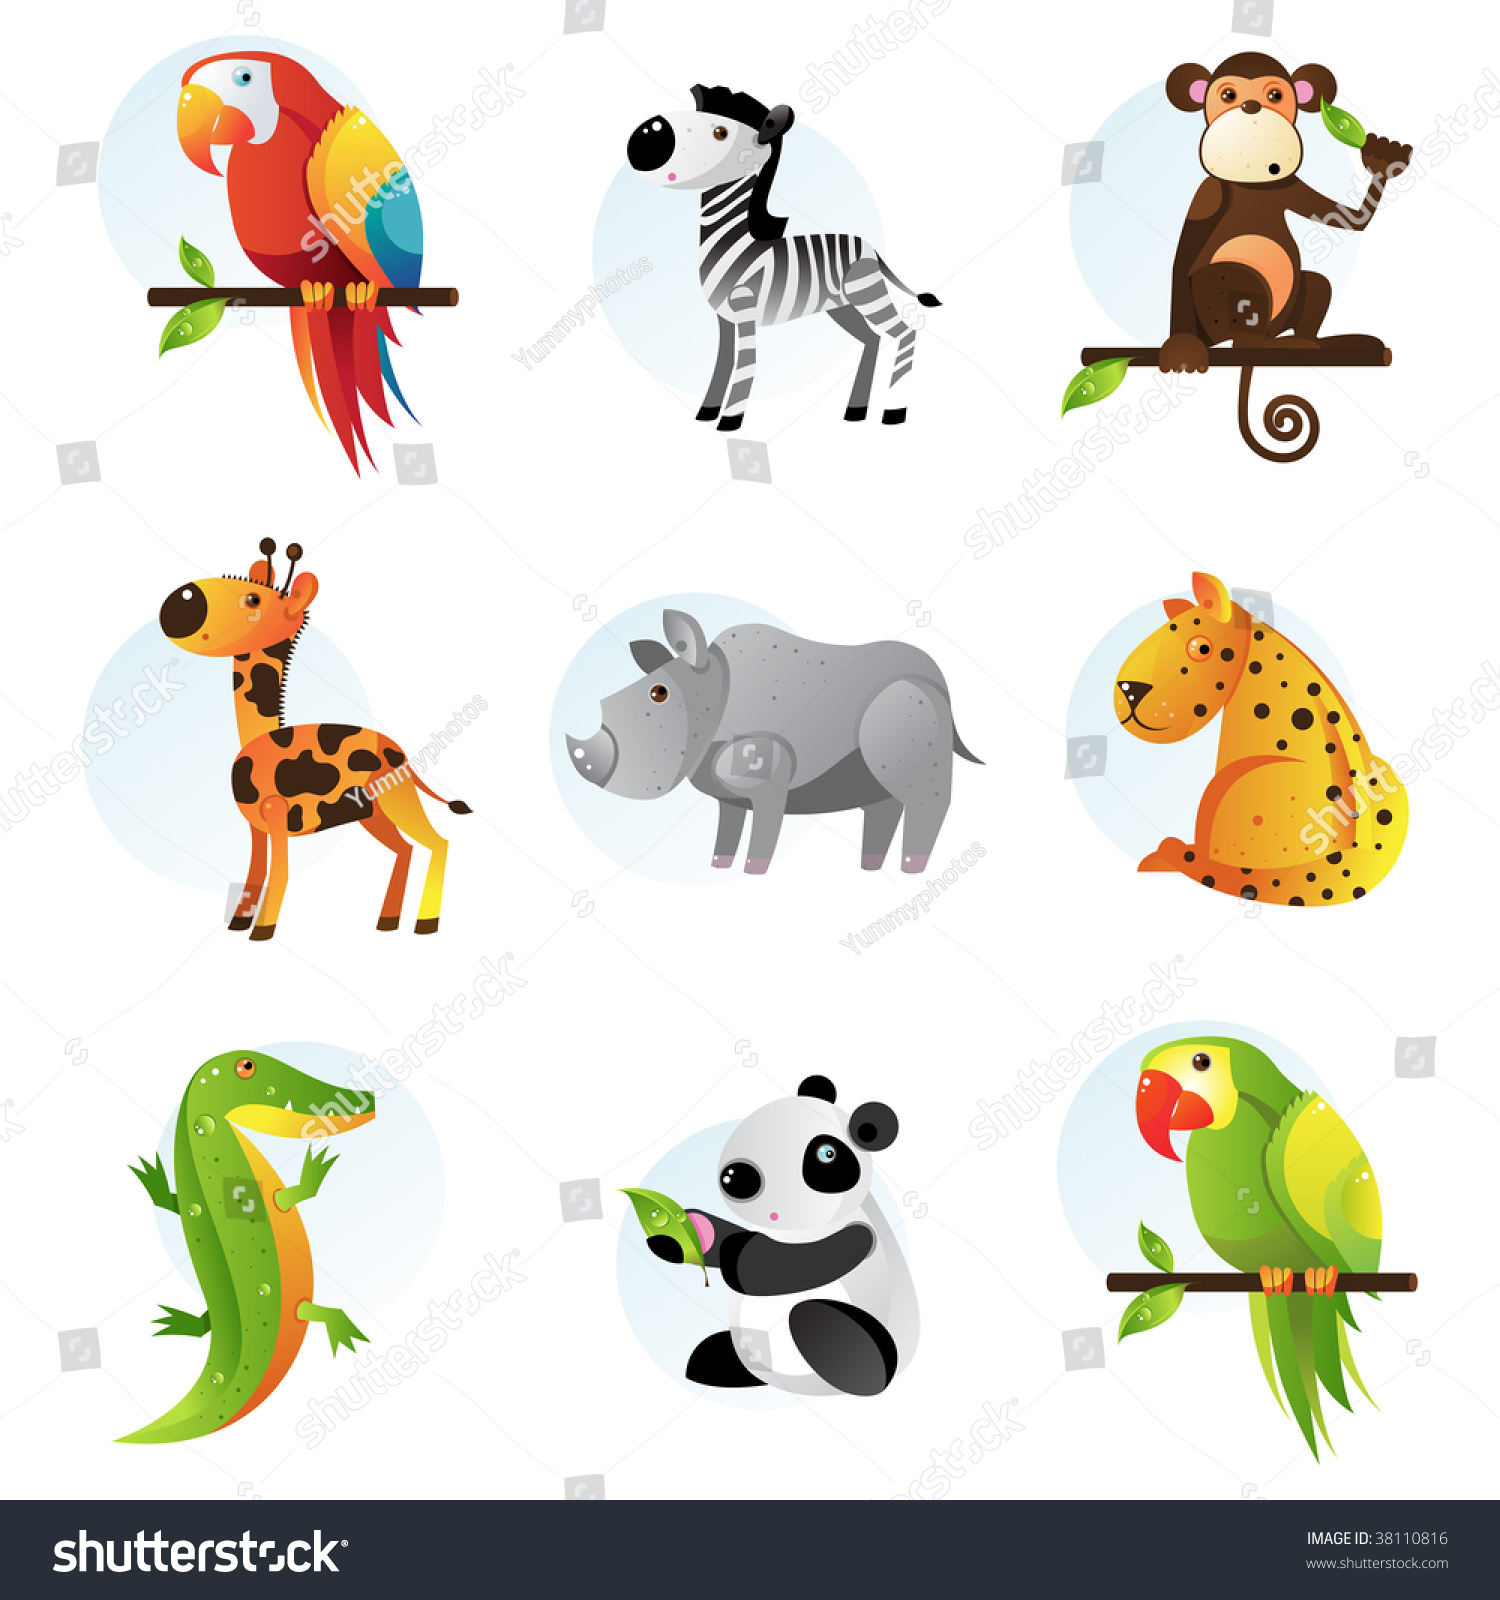 Different Bright Jungle And Safari Animals Stock Vector Illustration ...